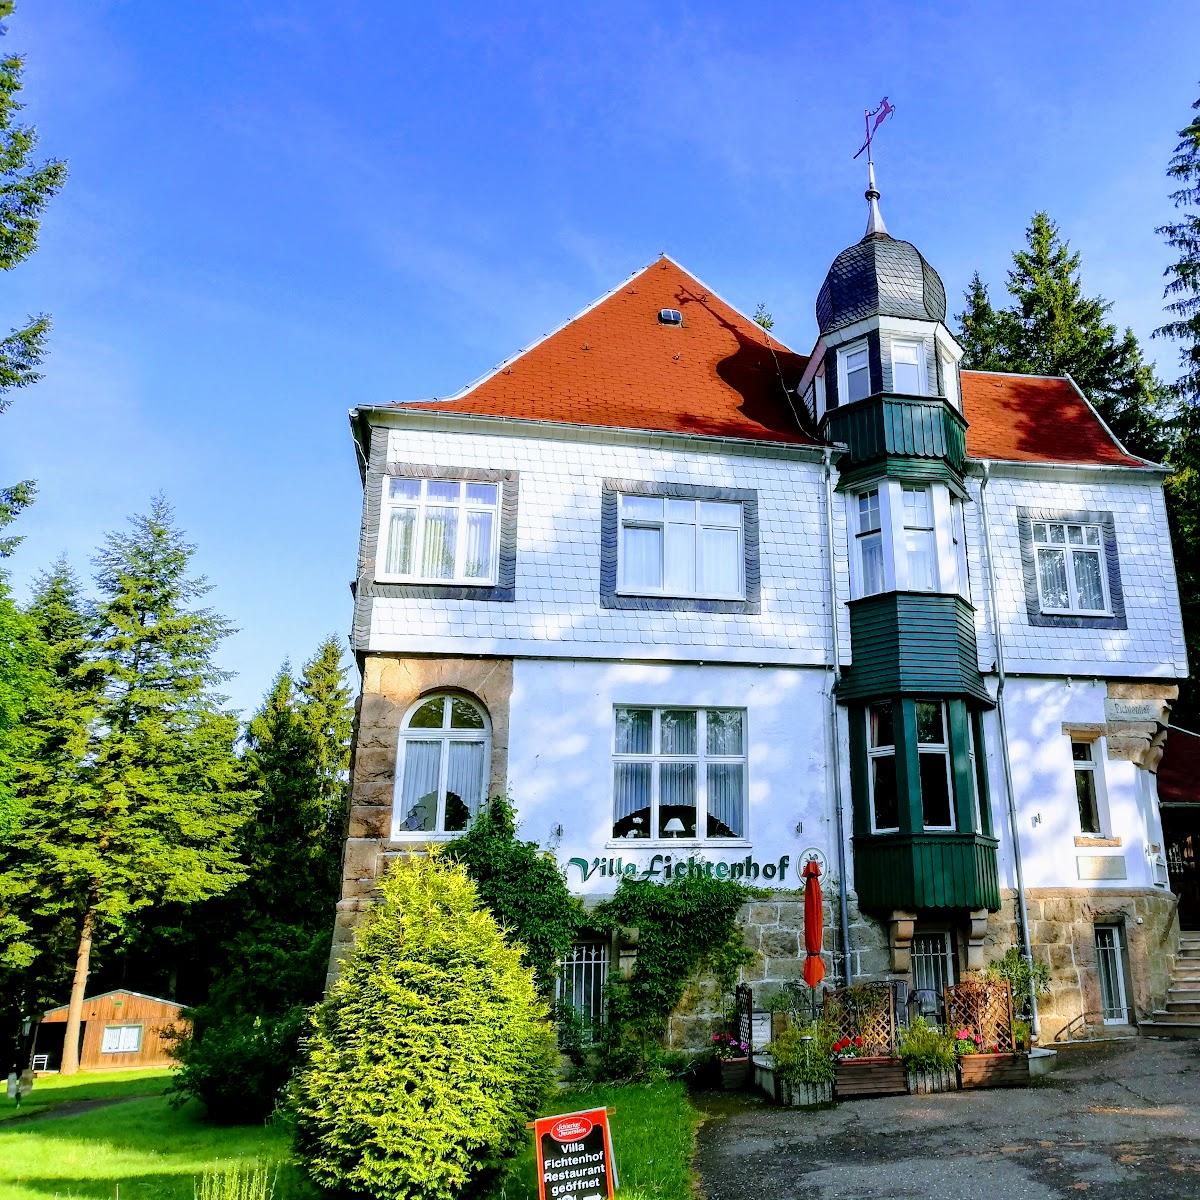 Restaurant "Hotel Villa Fichtenhof" in Wernigerode